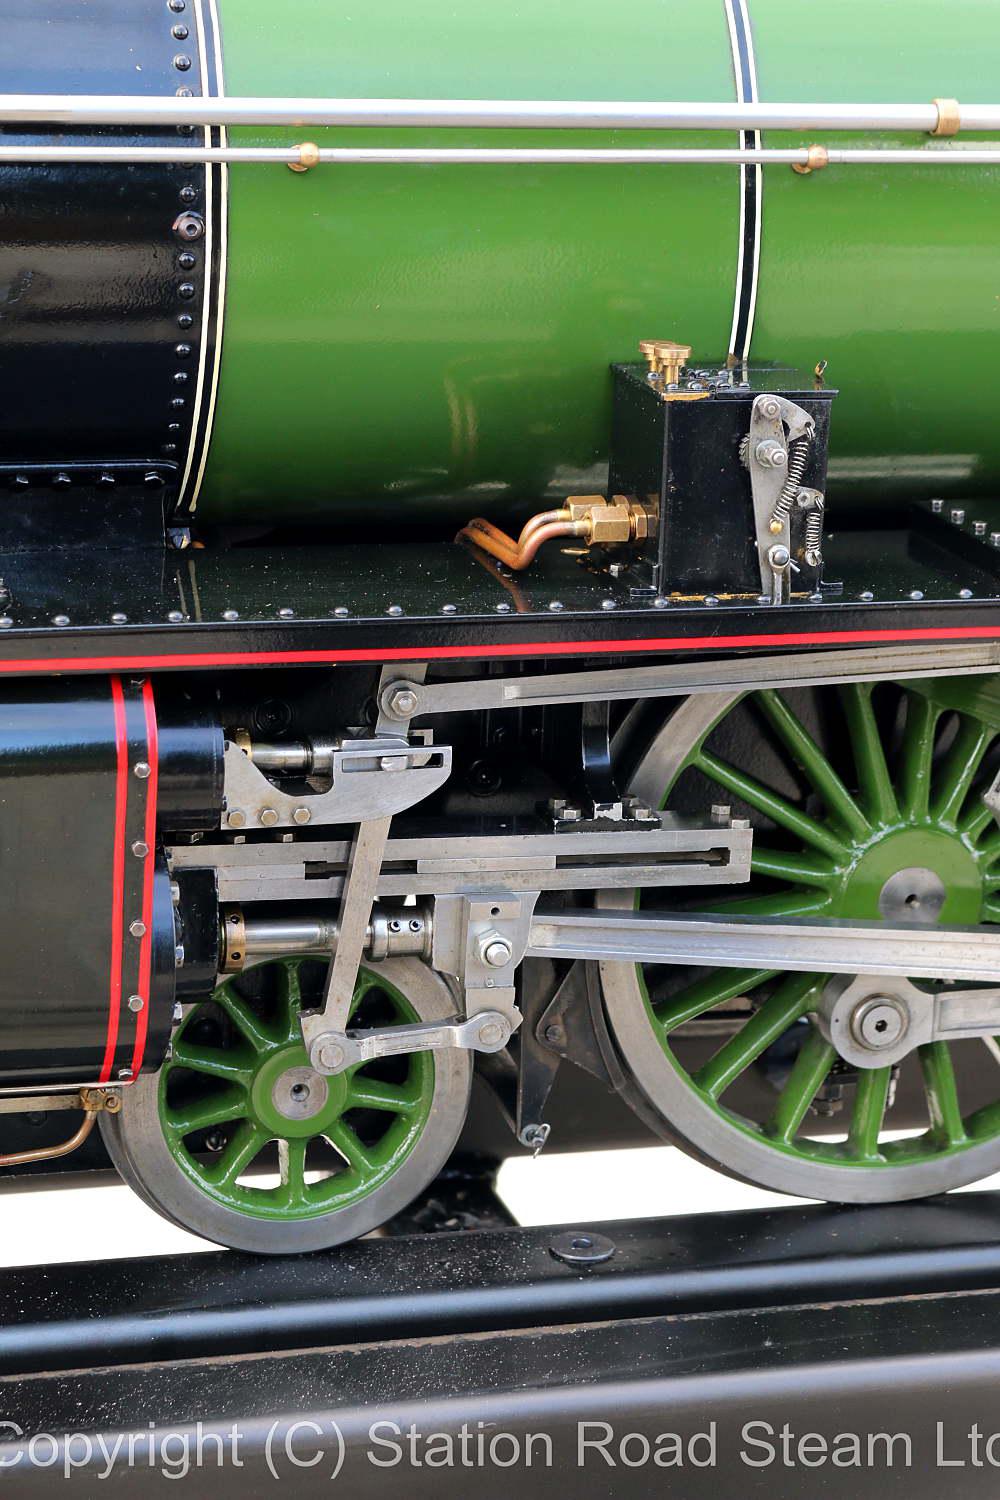 5 inch gauge LNER B1 